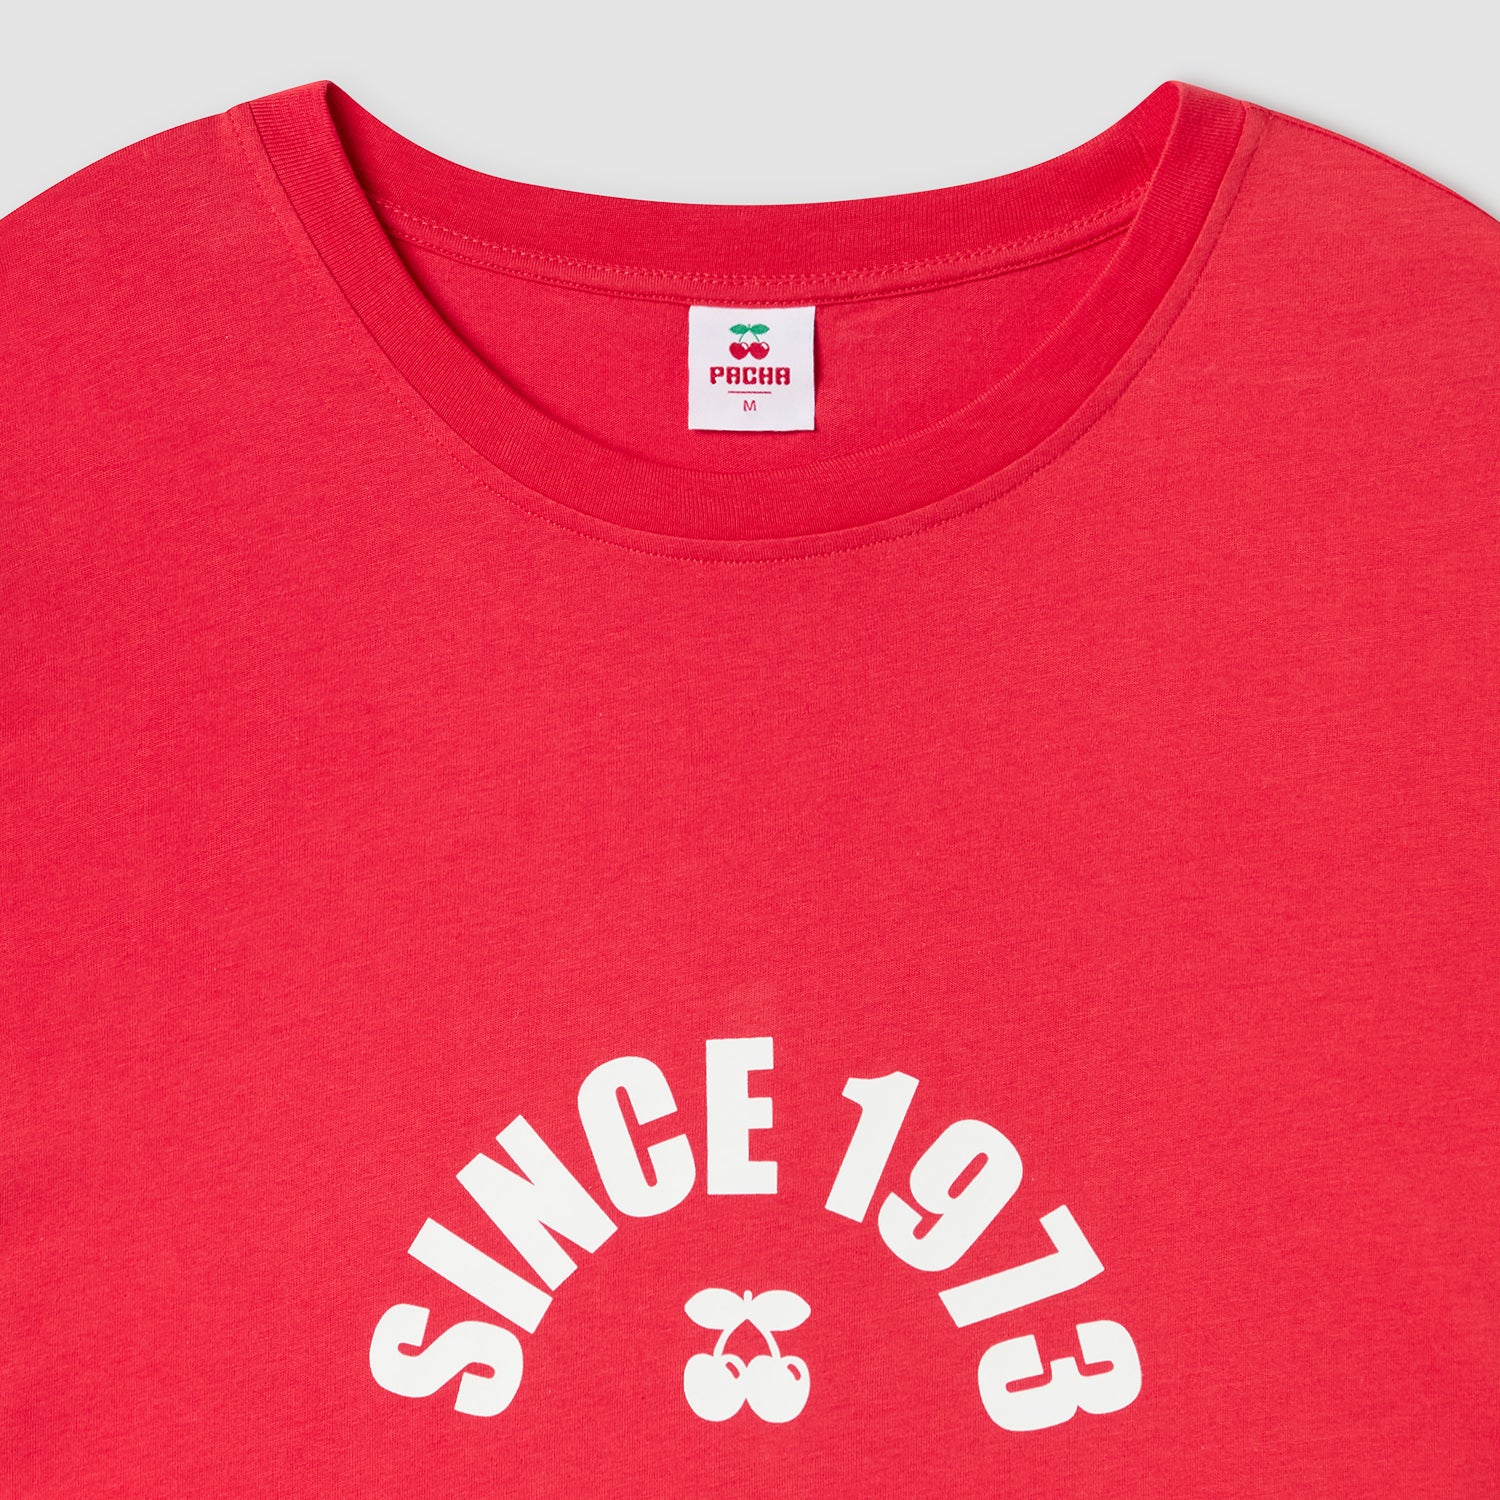 Seit 1973 T-Shirt